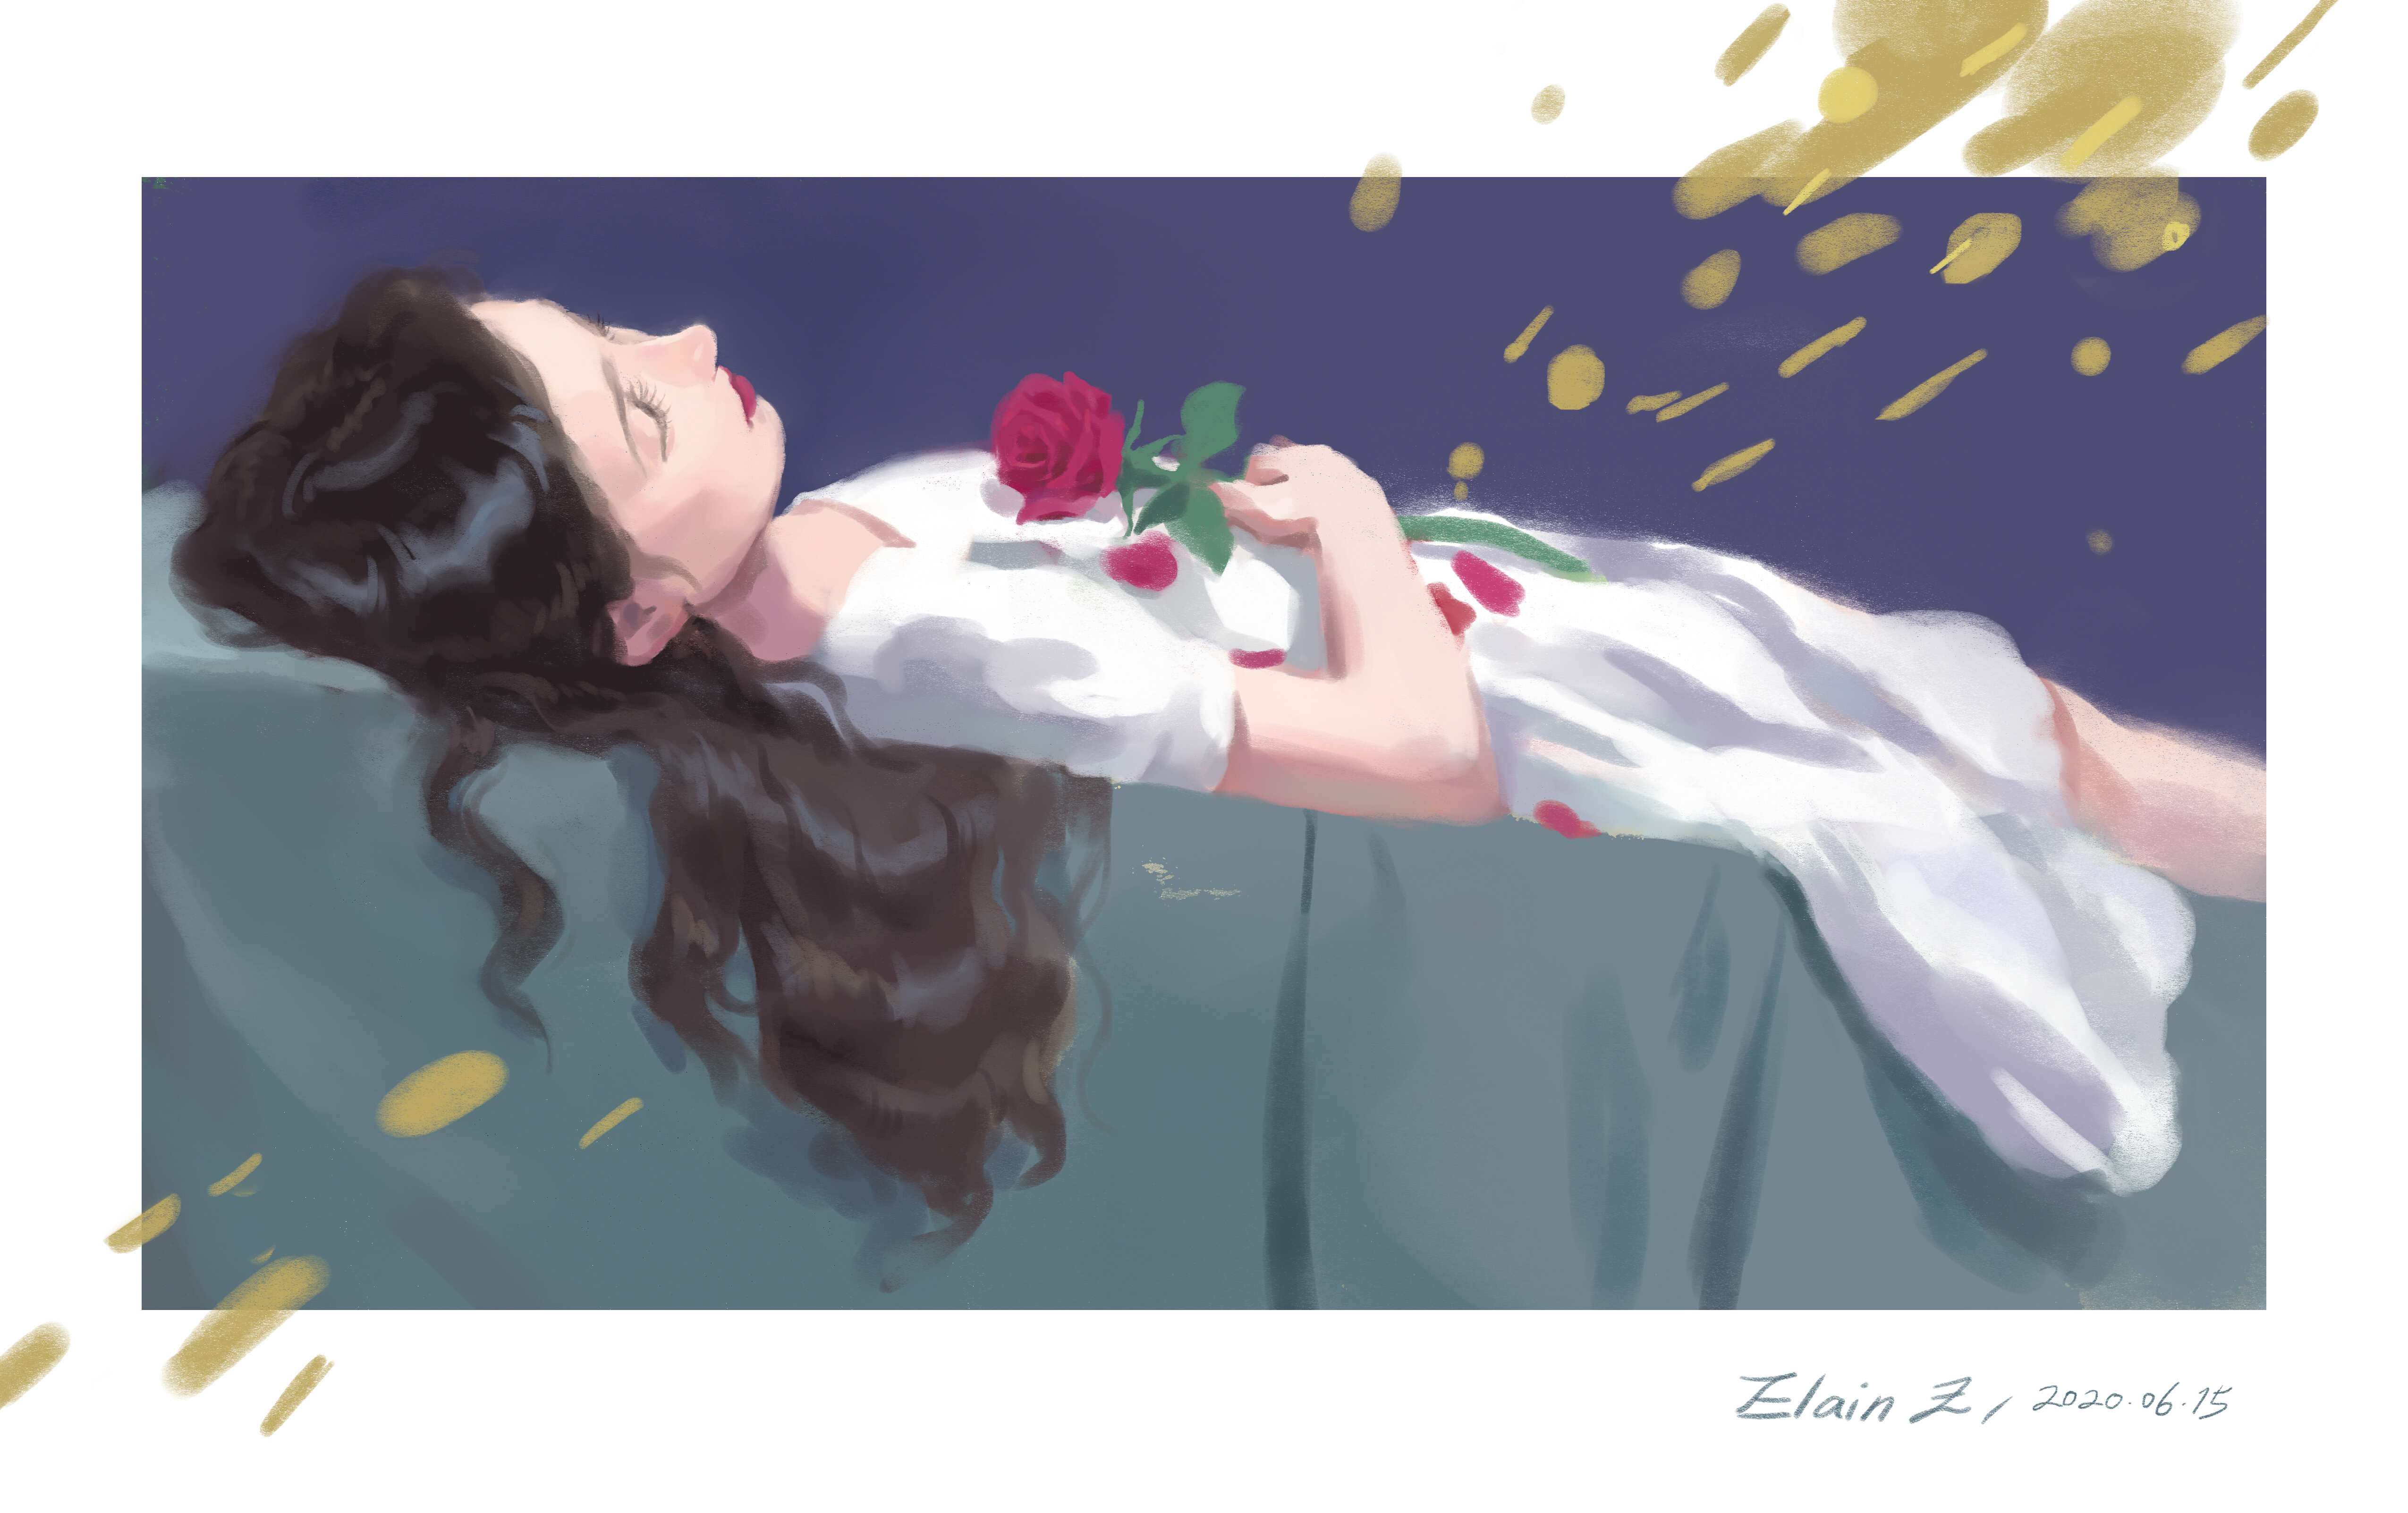 12 Sleeping Beauty